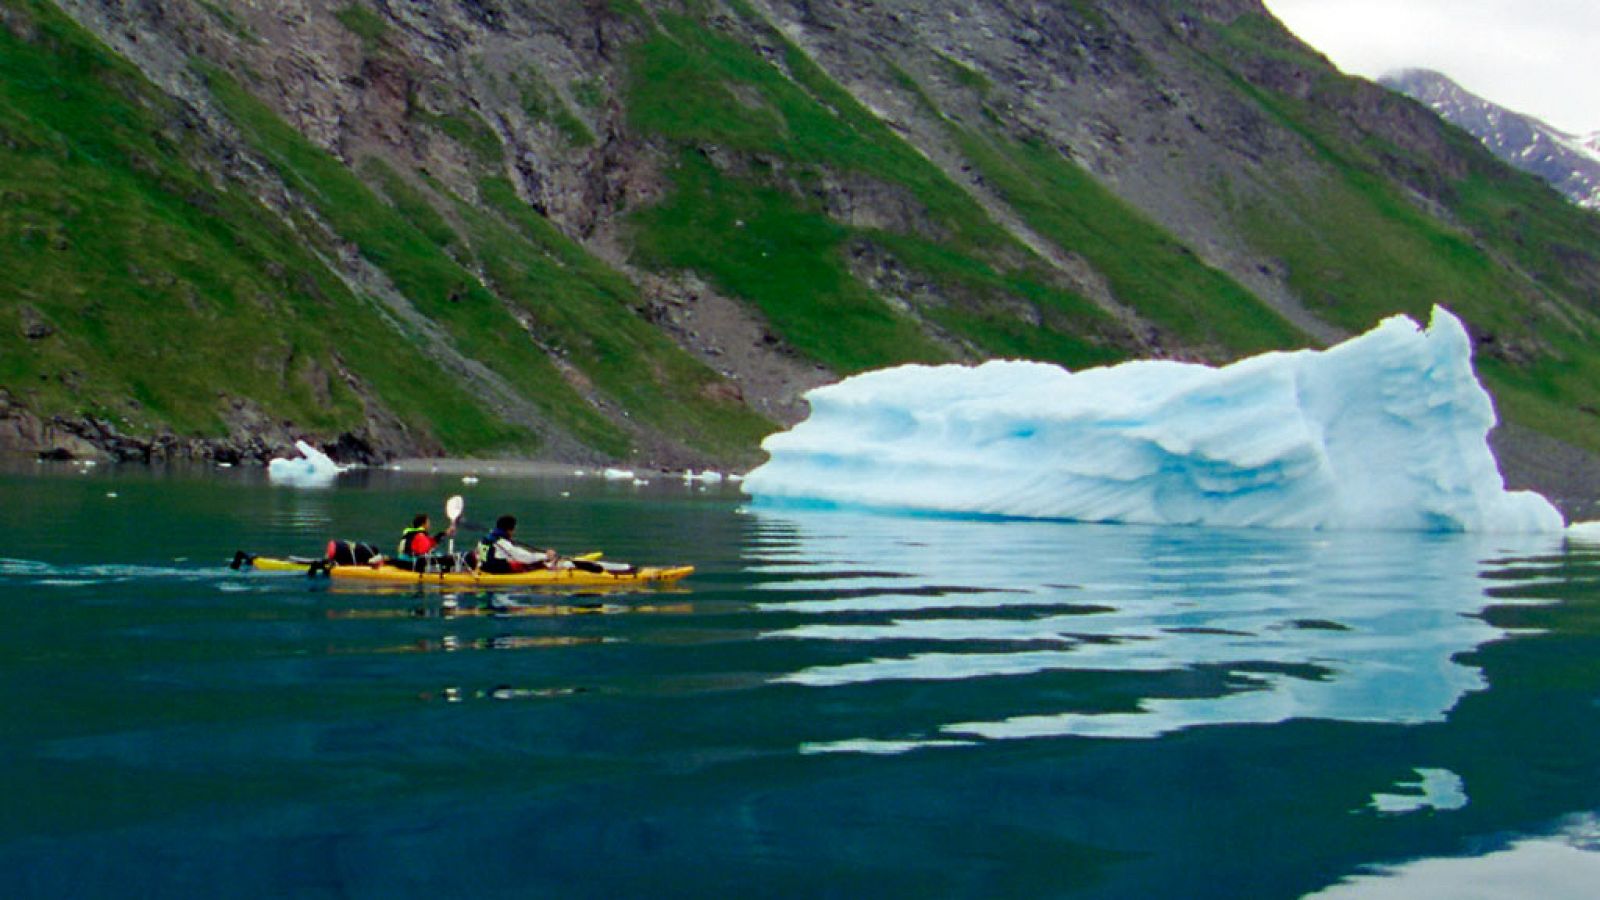 Hay algo que convierte a Groenlandia en un lugar especial para una expedición: navegar entre témpanos de hielo emulando a los nativos inuit inventores del kayak, disfrutar de sus bellos paisajes...